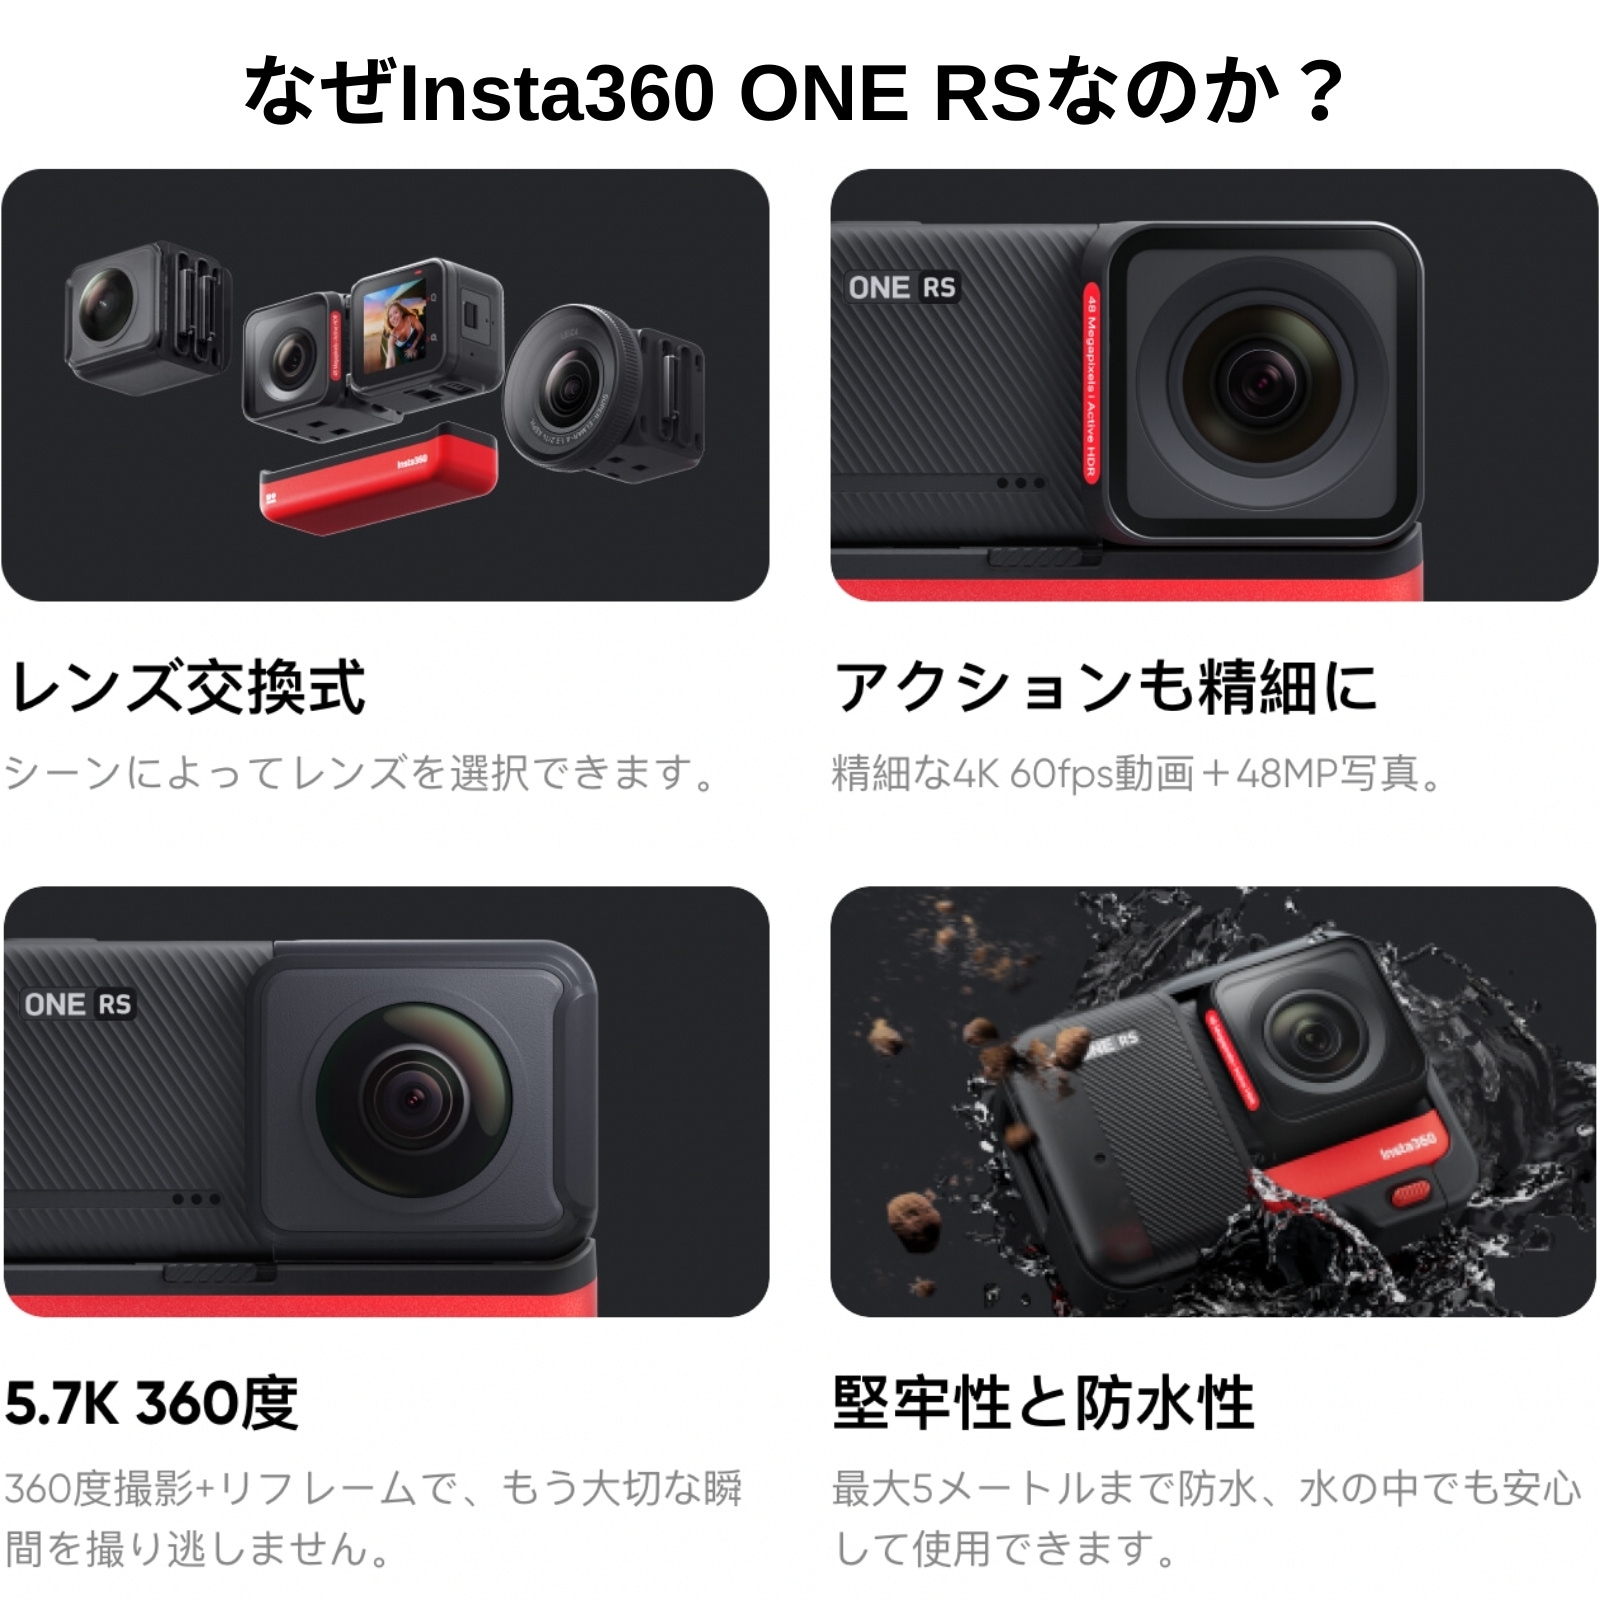 Insta360 ONE RS 4K Edition 本体+4Kブーストレンズ アクションカメラ